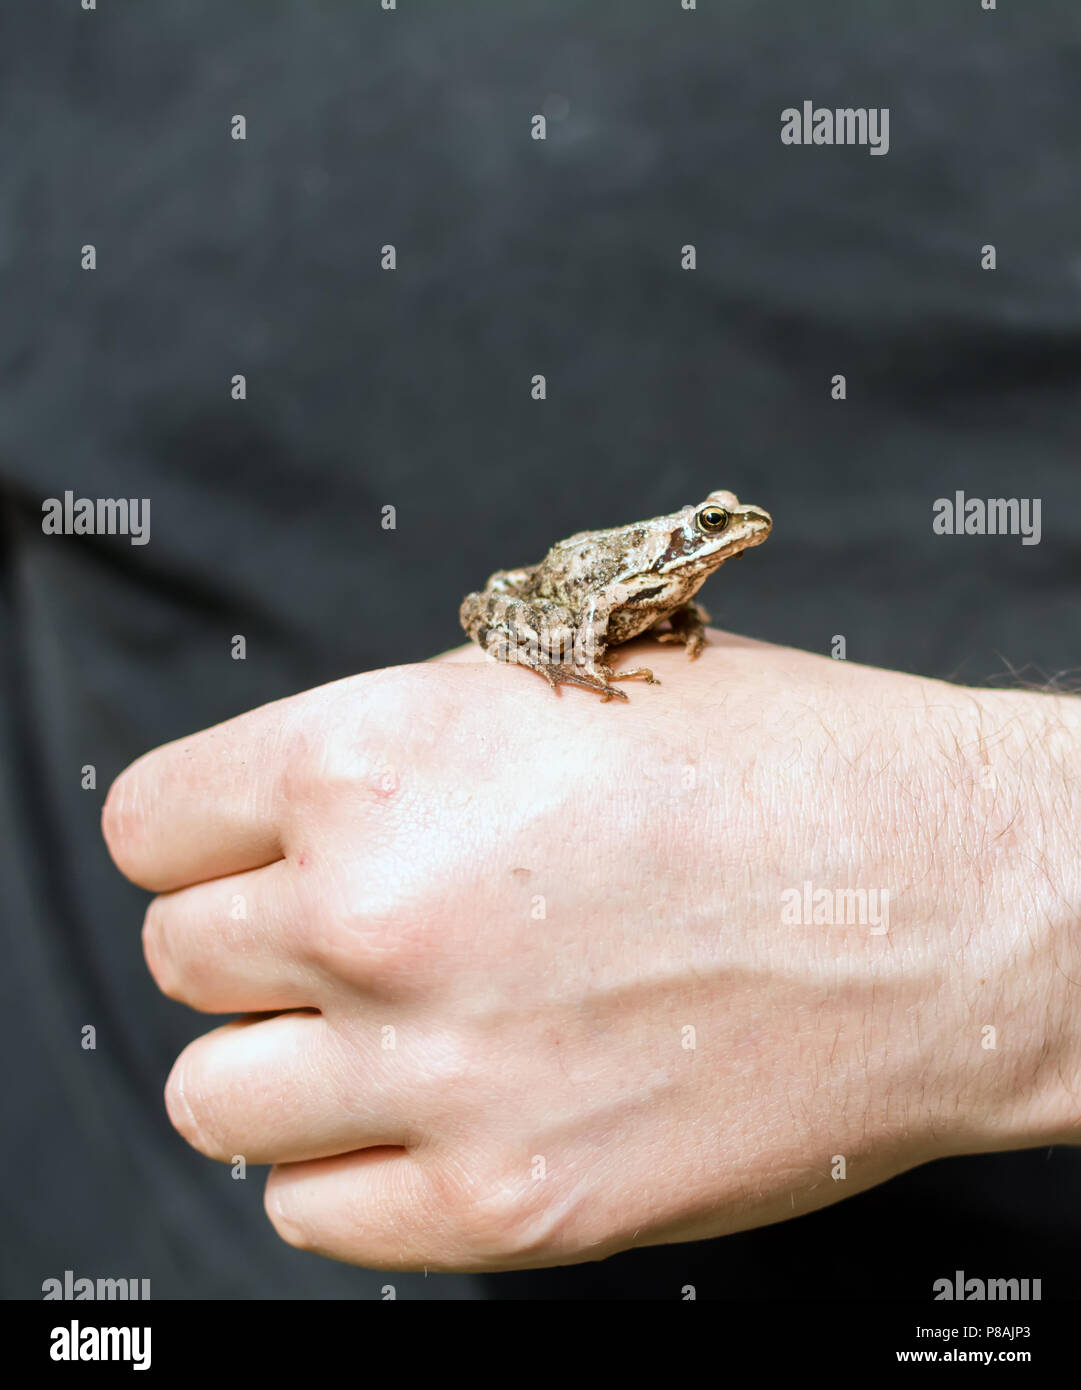 Slim, marrone rossastro Moor frog (Rana arvalis) seduto su una mano d'uomo. Questo semiaquatic anfibi è un membro della famiglia ranidi, o vero rane. Foto Stock